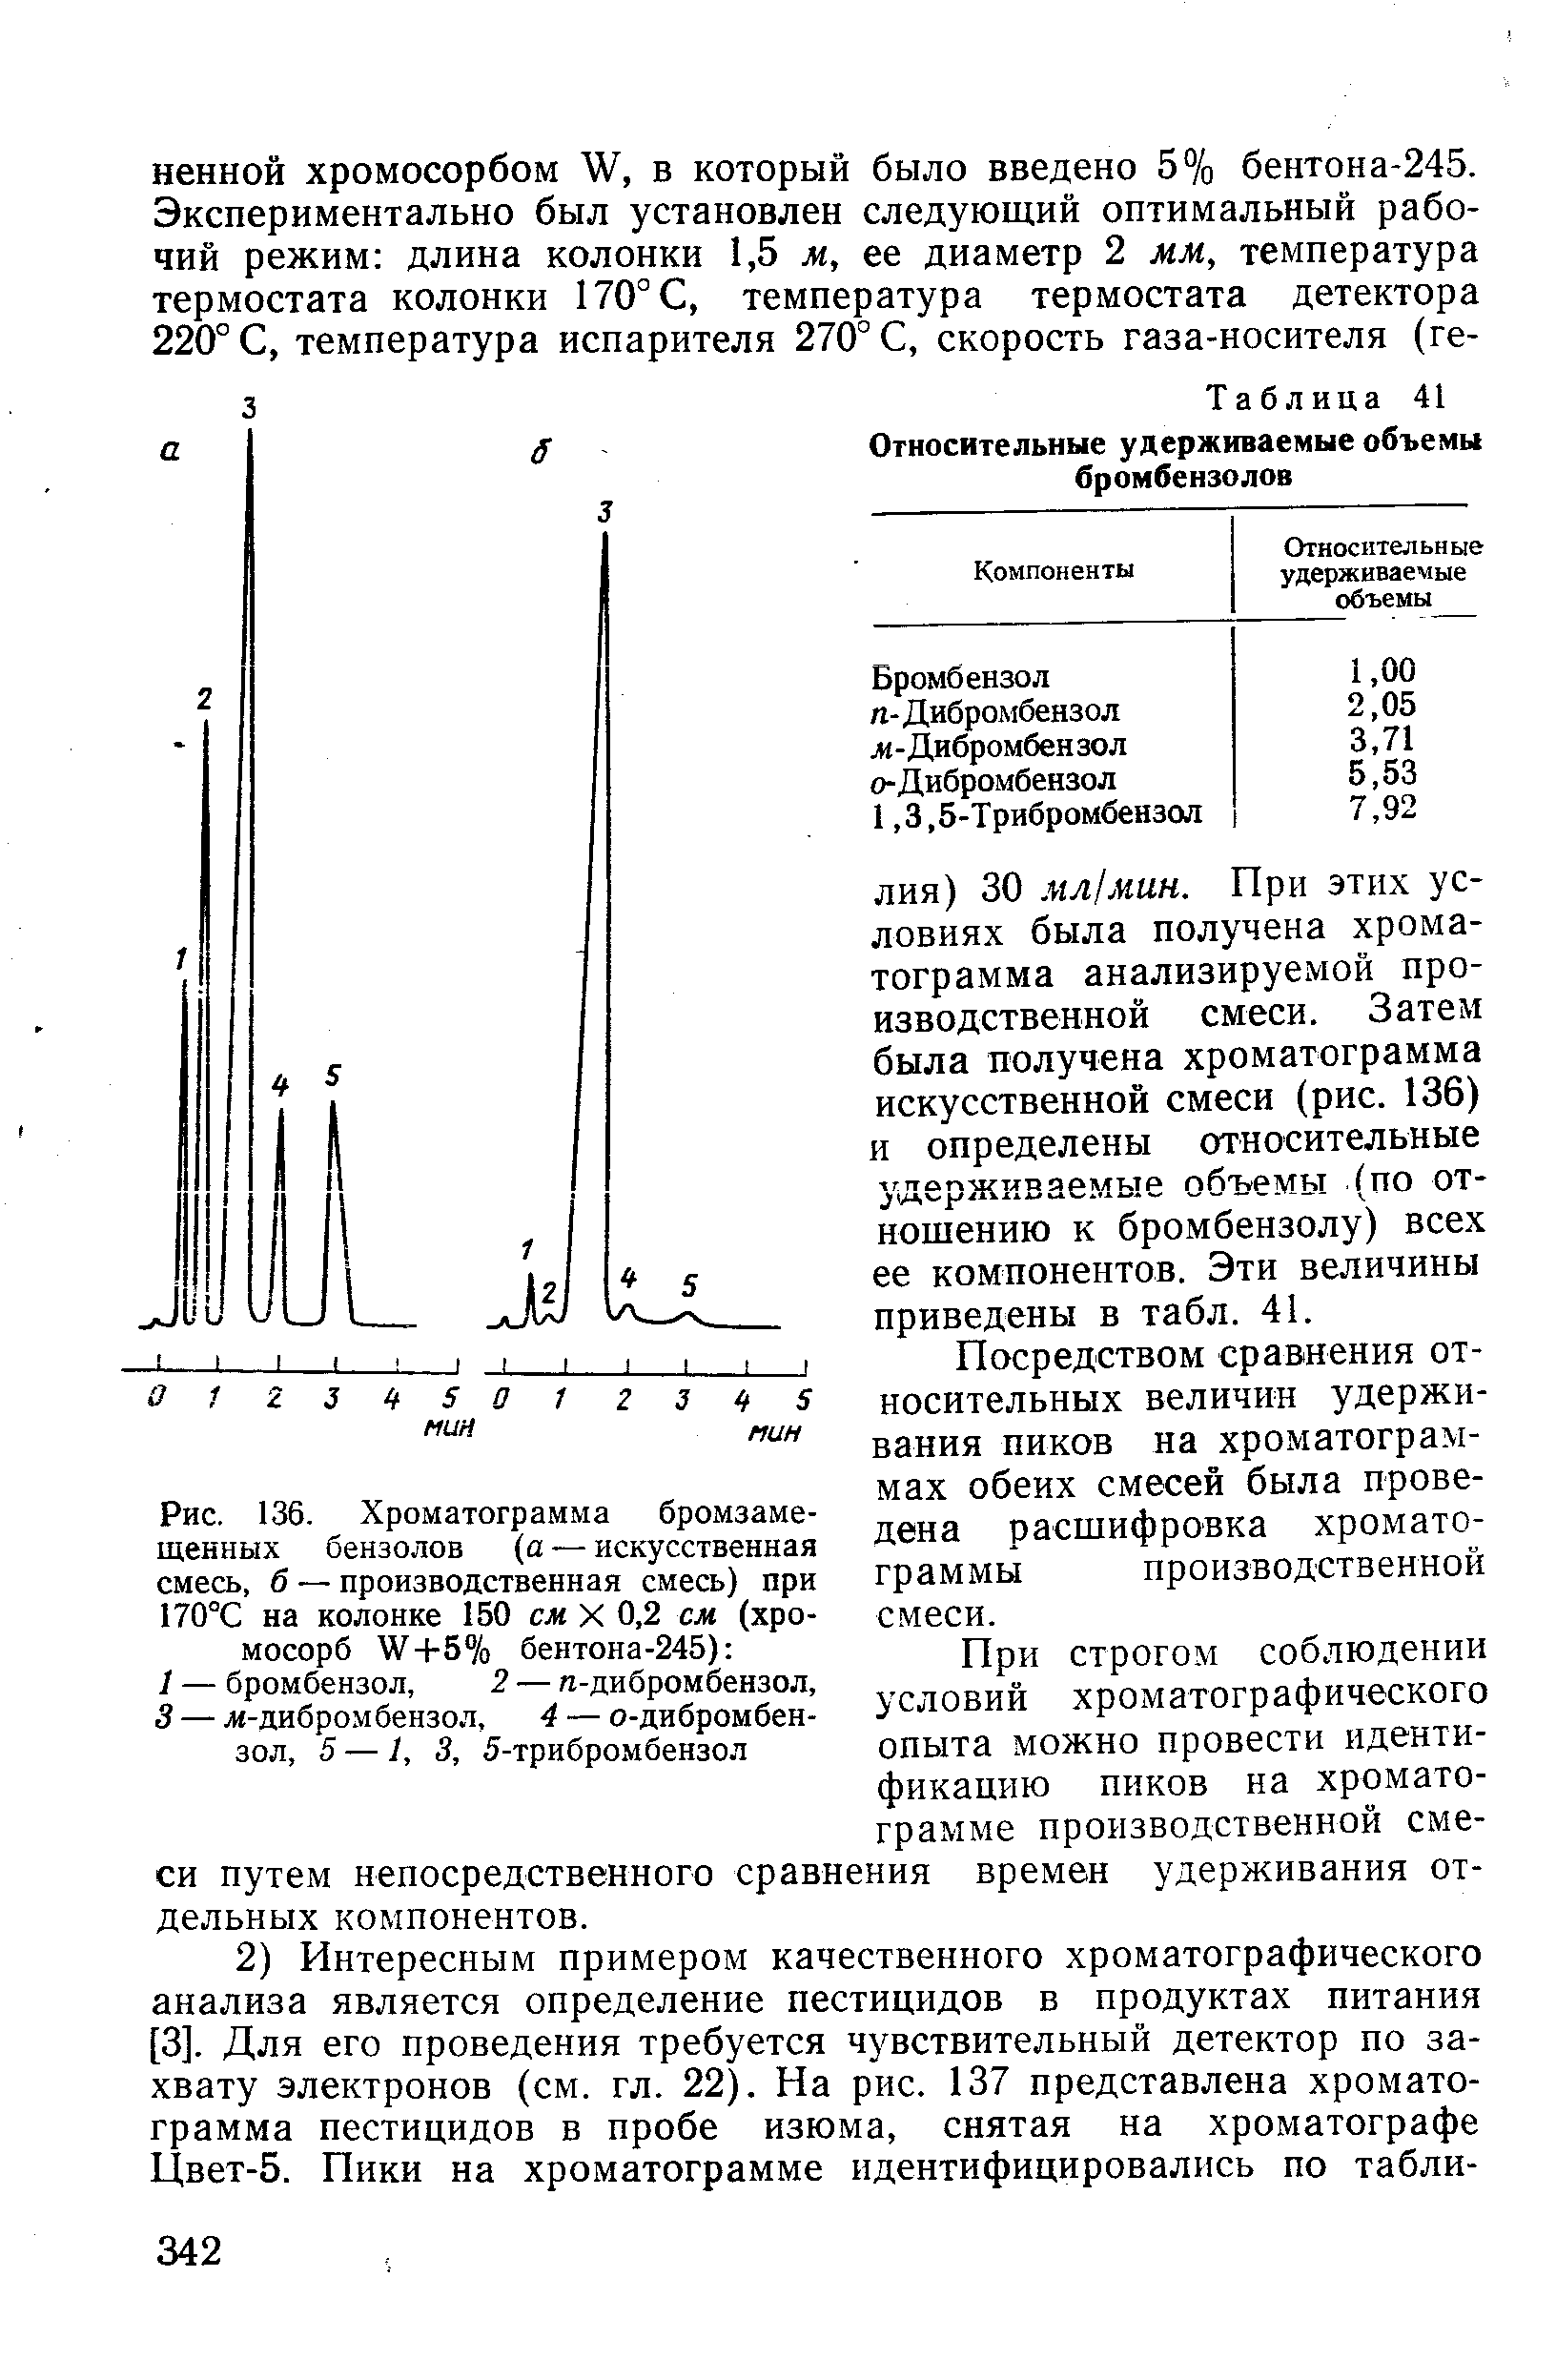 Посредством сравнения относительных величин удерживания пиков на хроматограммах обеих смесей была проведена расшифровка хроматограммы производственной смеси.